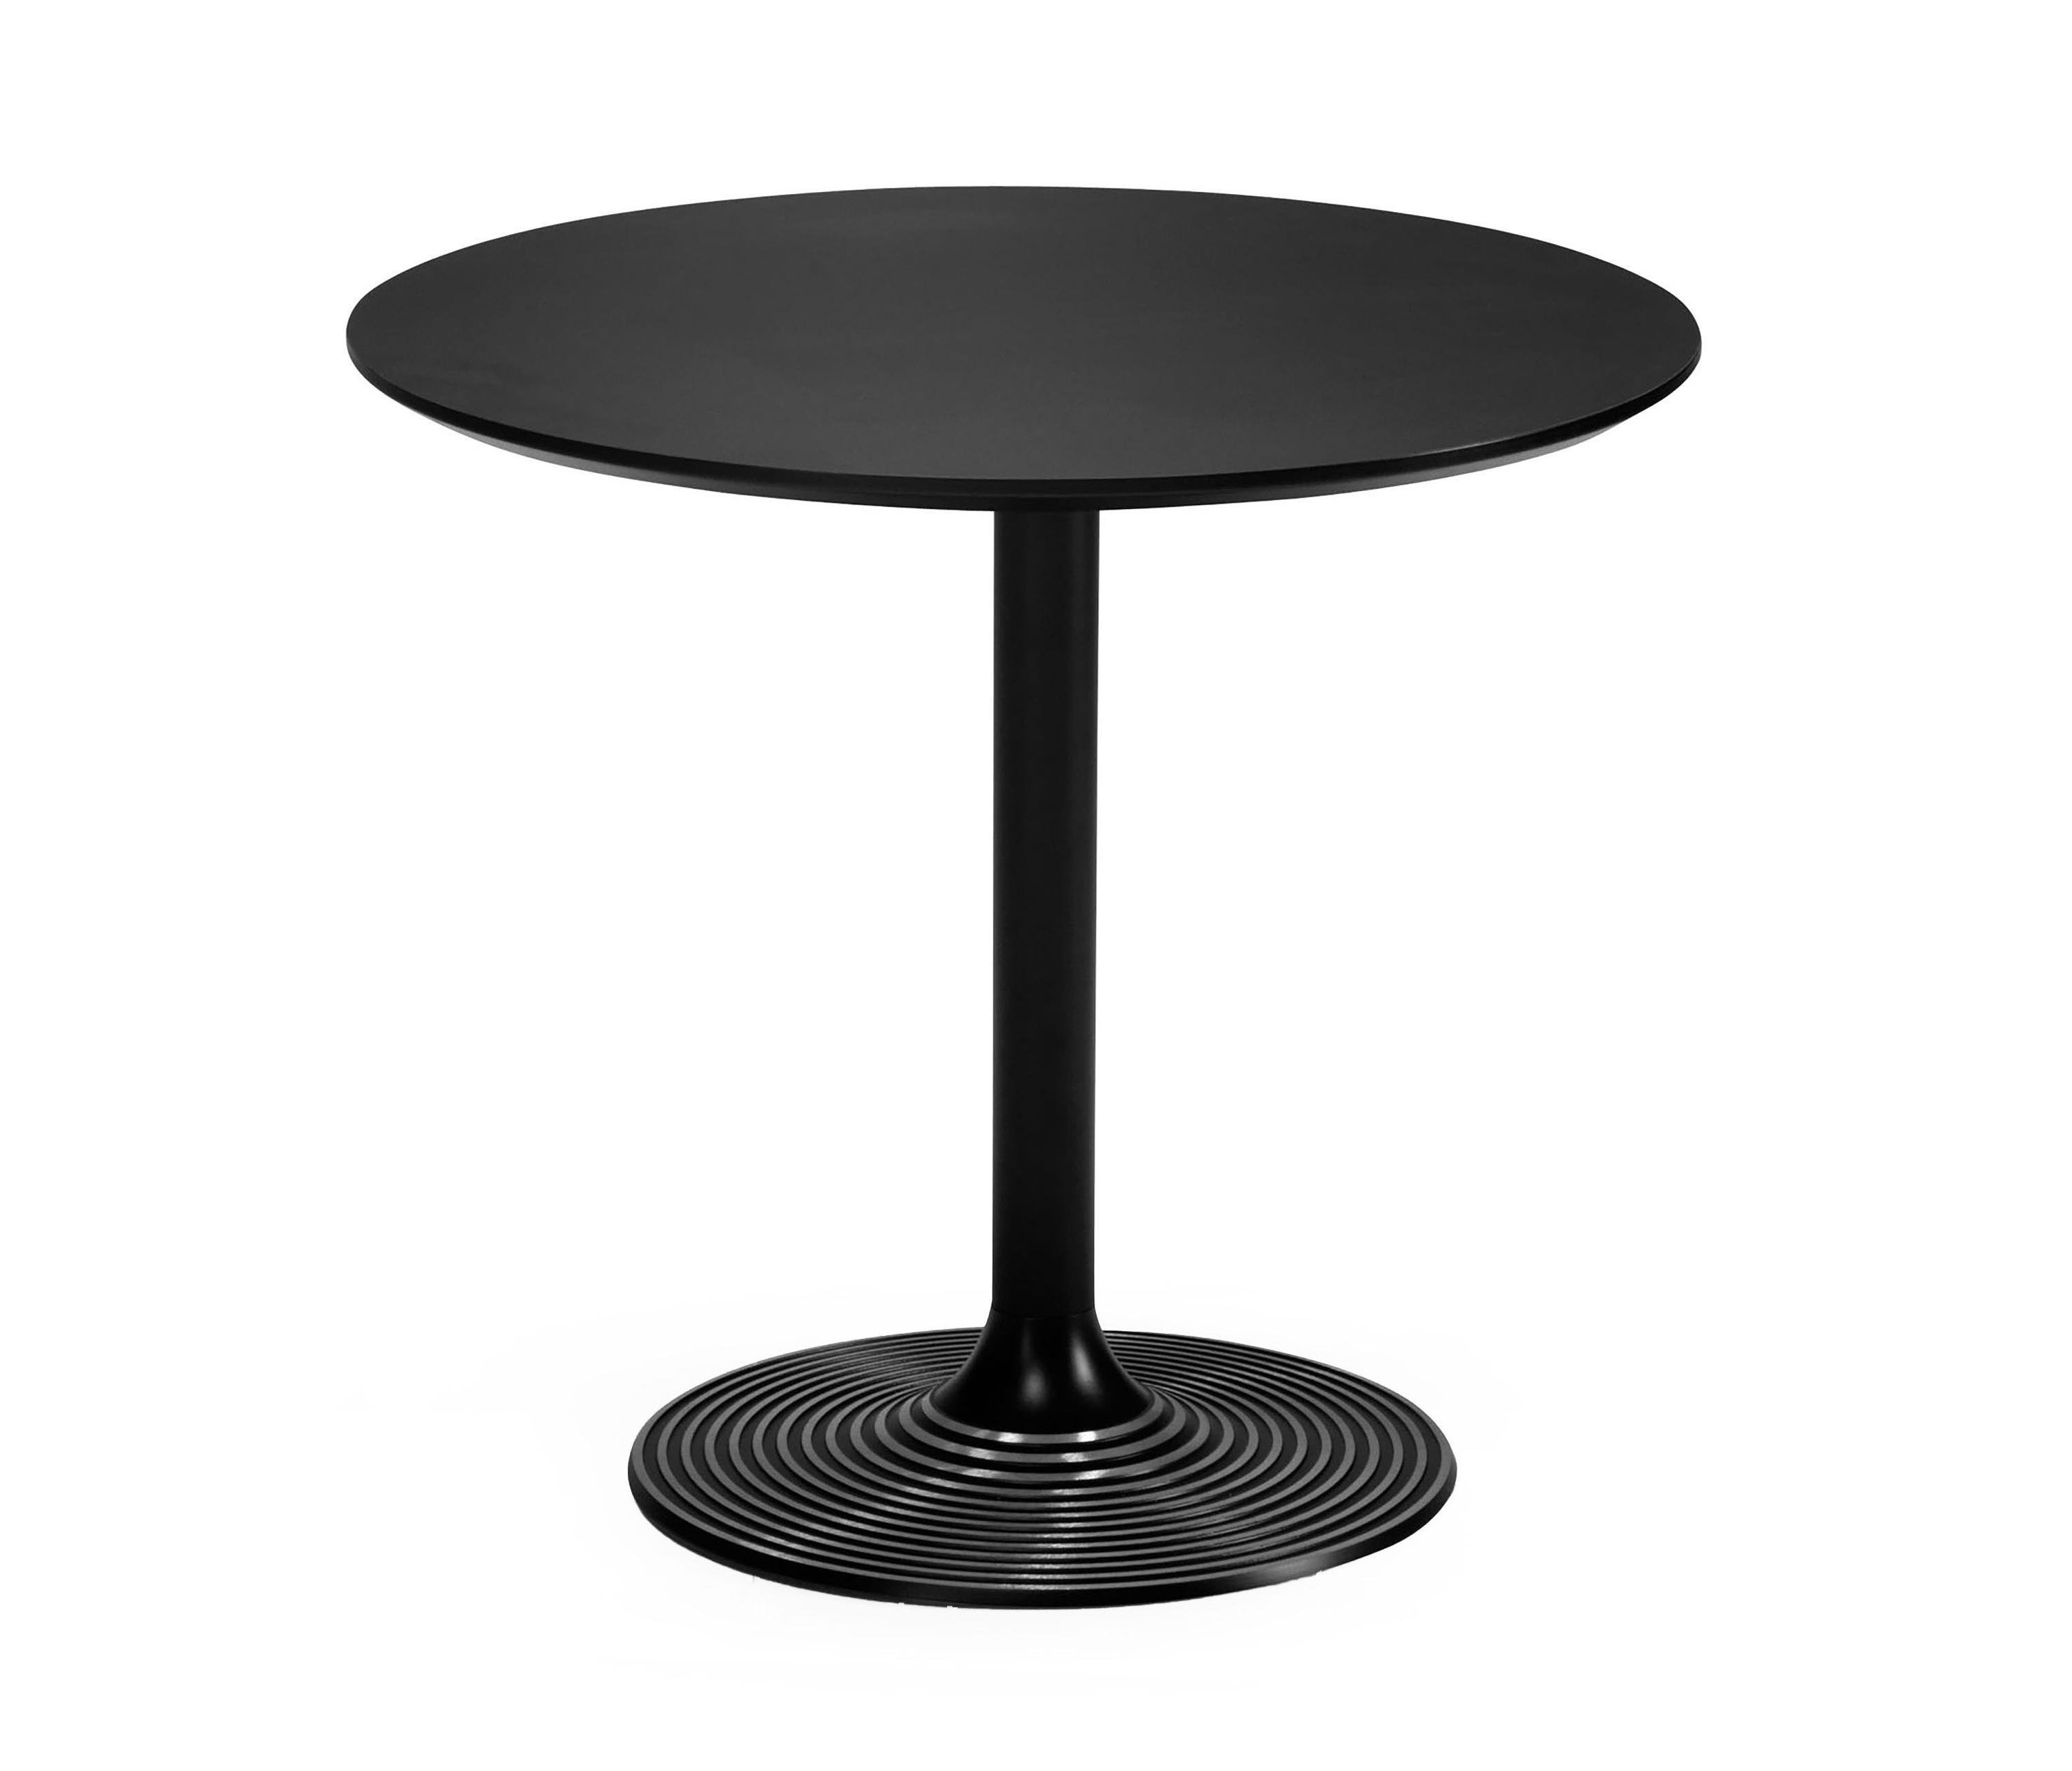 Стол круглый 1 м диаметр. Стол для кафе 80*80. Круглый стол для кафе. Столик круглый. Столик для кафе круглый.